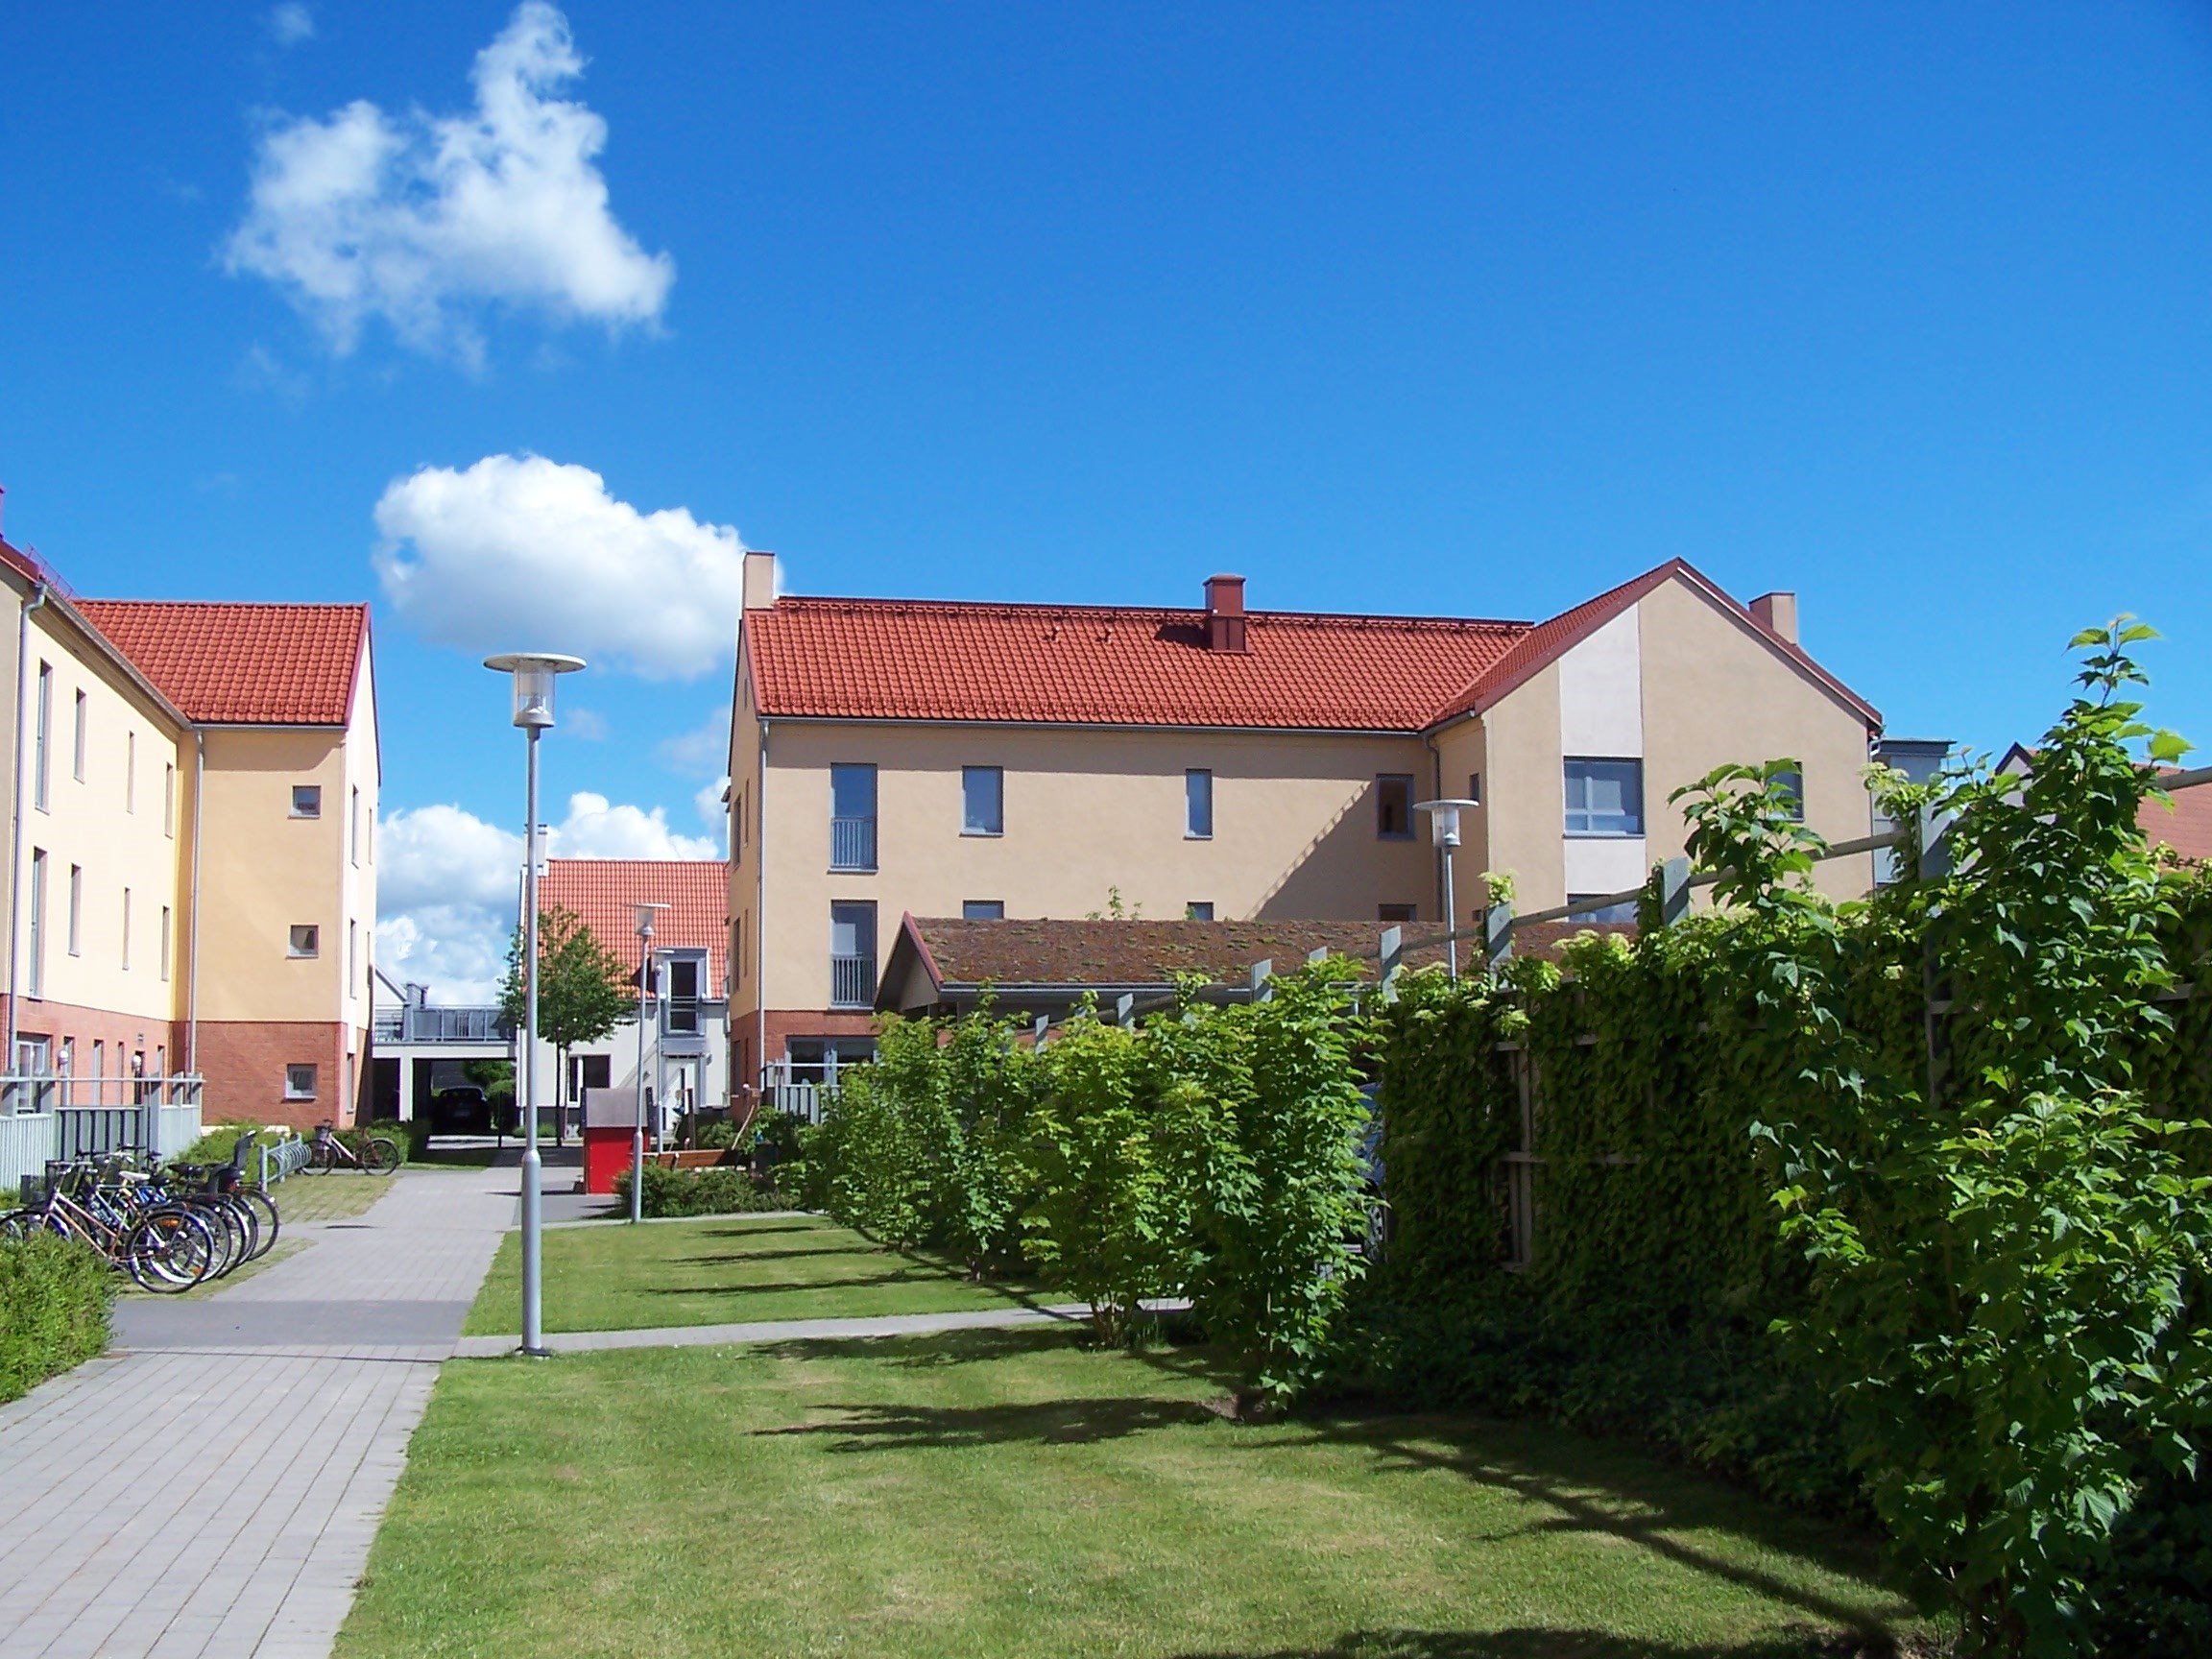 Kvartersmiljö inom Löddeköpinge centrum